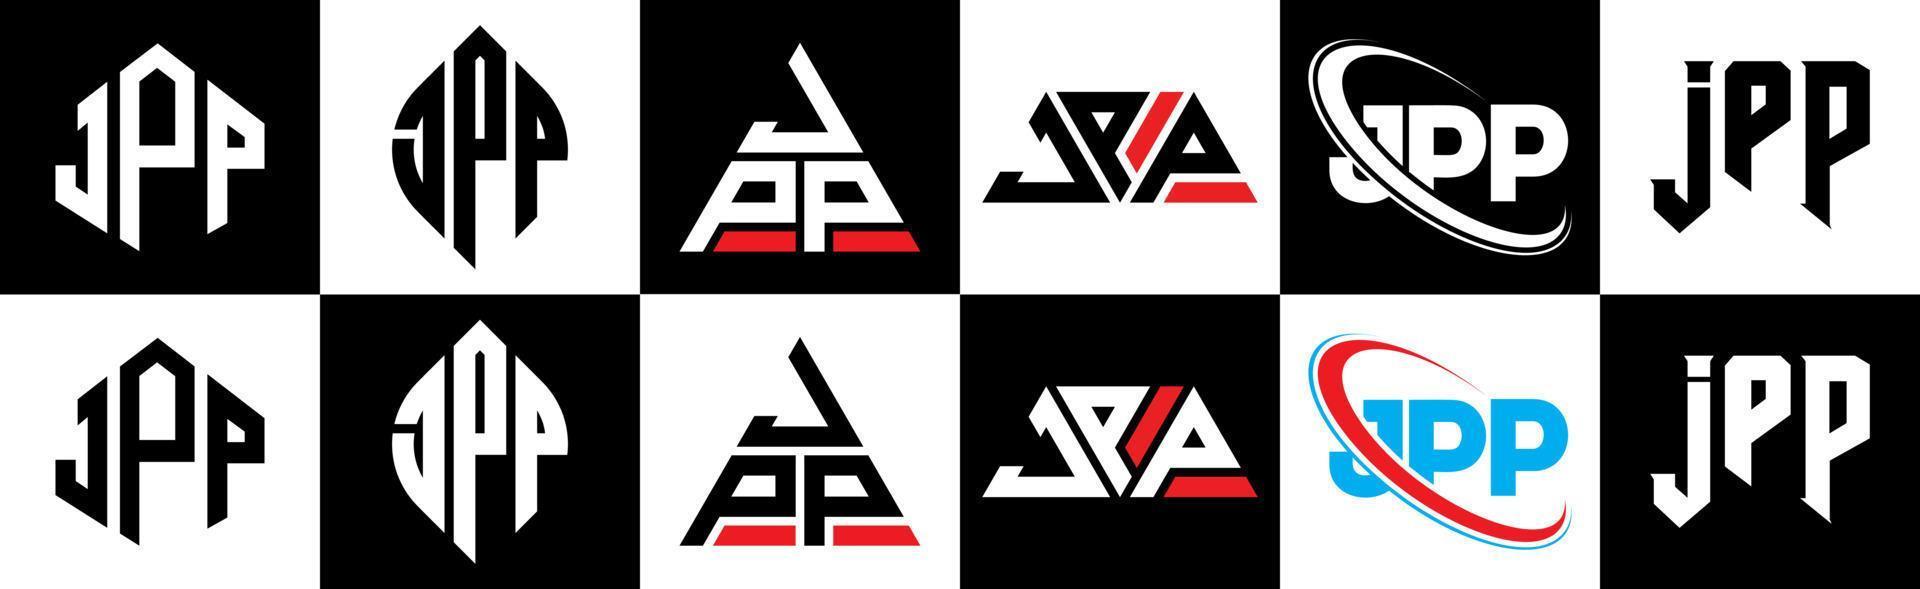 jpp-Buchstaben-Logo-Design in sechs Stilen. jpp Polygon, Kreis, Dreieck, Sechseck, flacher und einfacher Stil mit schwarz-weißem Buchstabenlogo in einer Zeichenfläche. jpp minimalistisches und klassisches Logo vektor